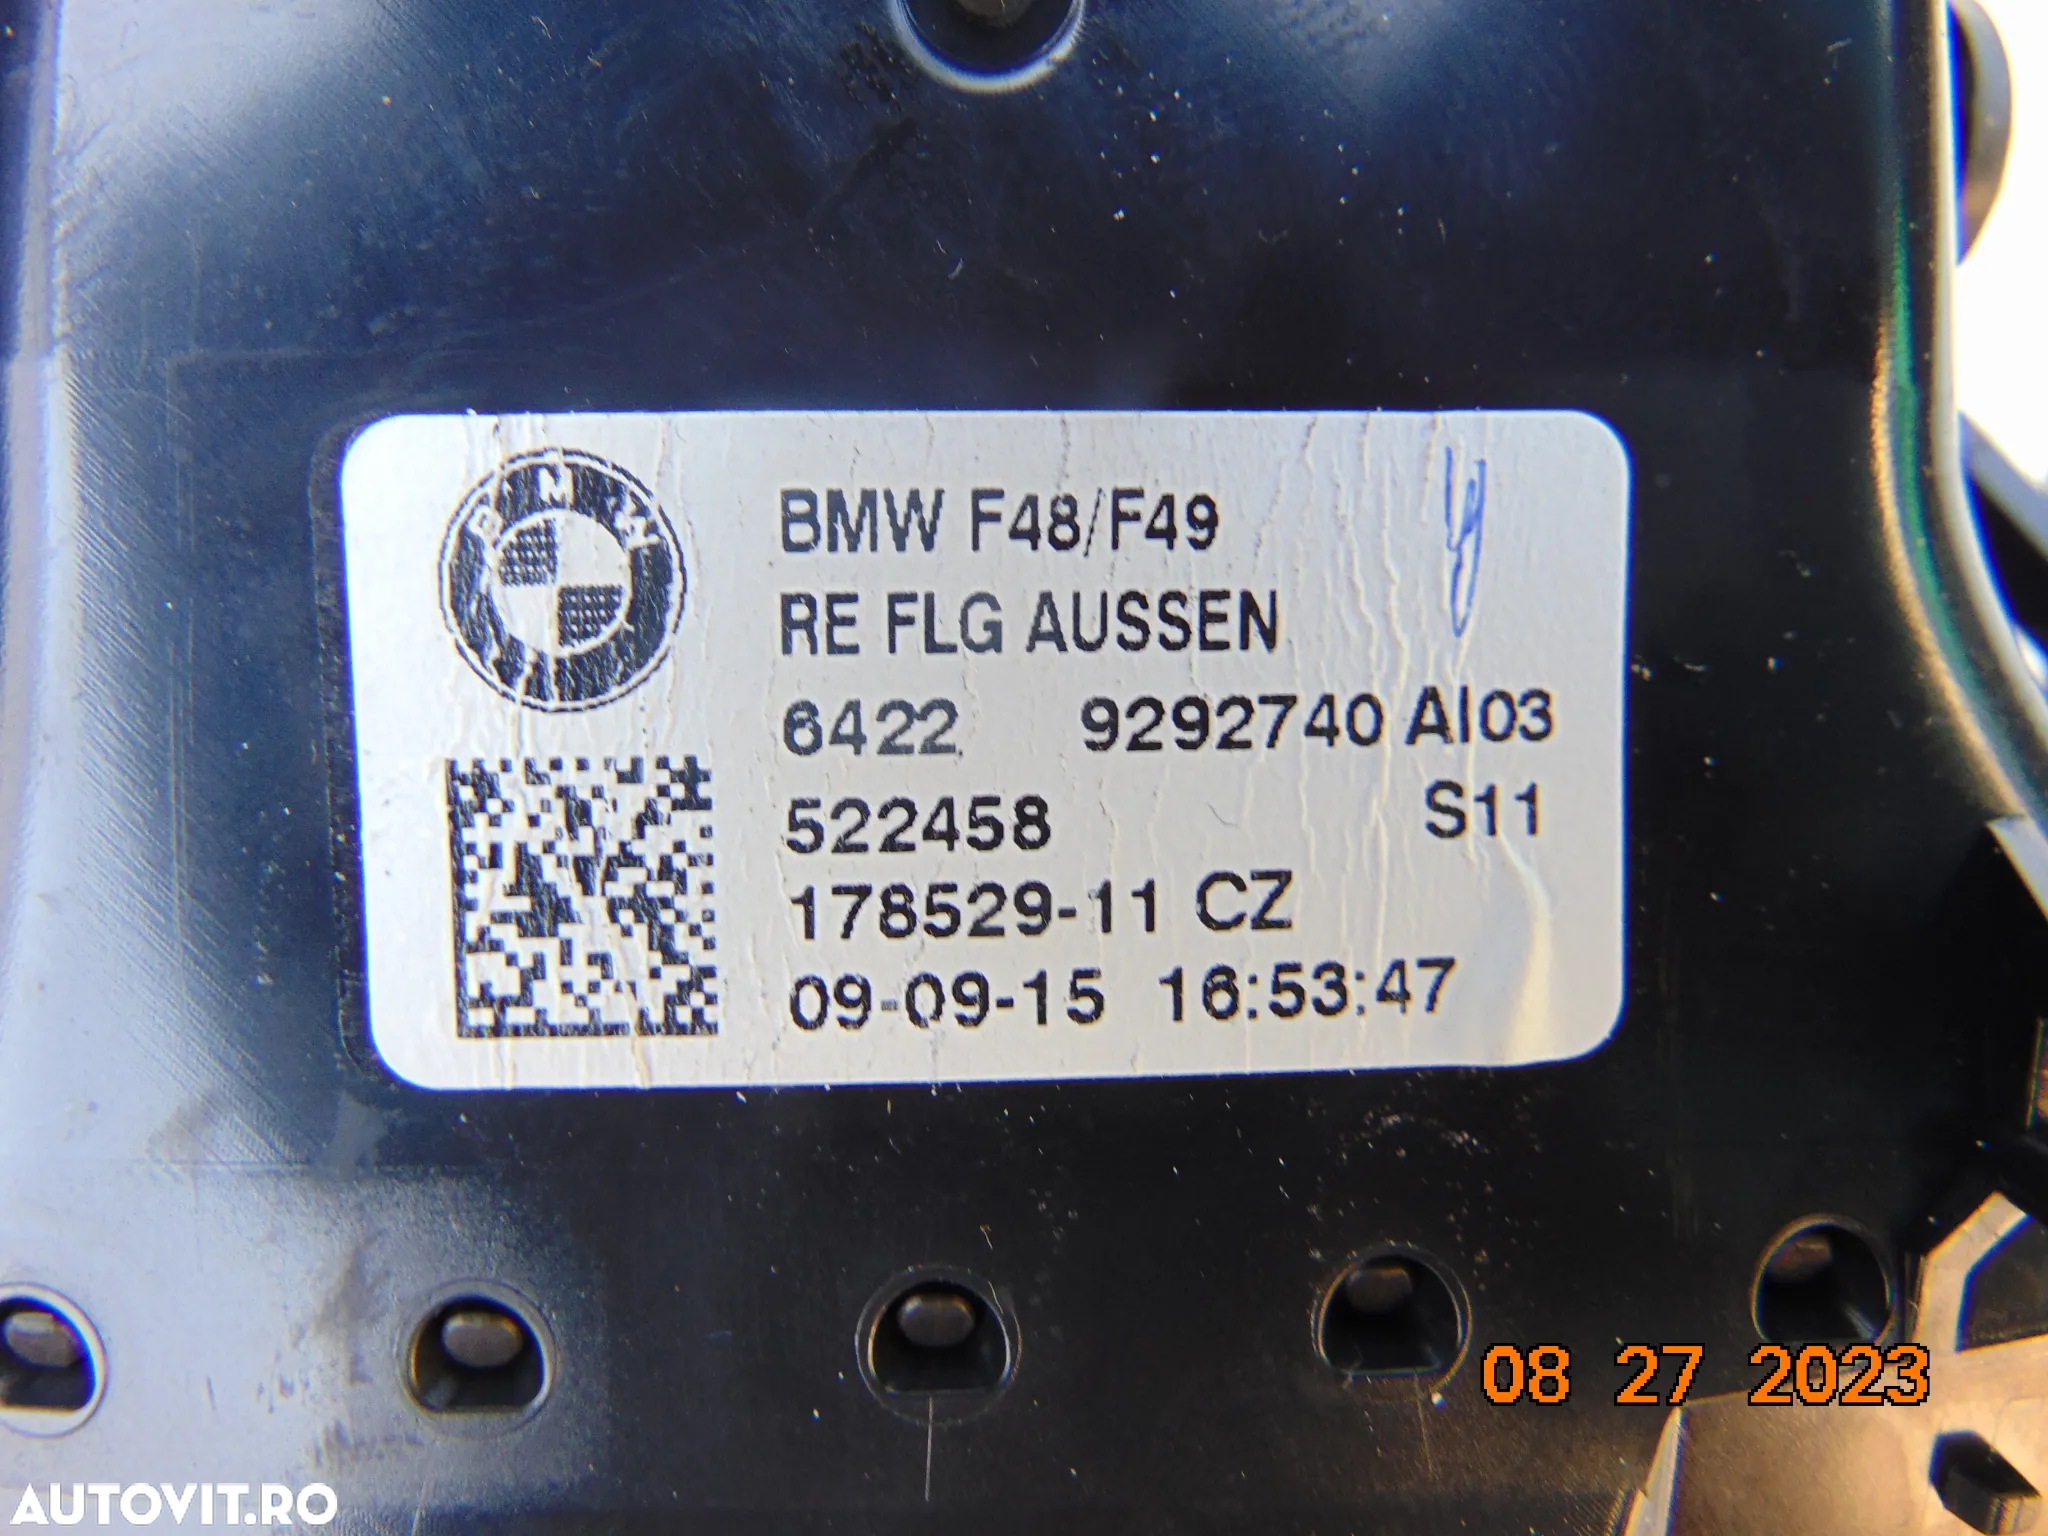 Ornamente bord BMW x1 F48 trim bord stanga dreapta ornamente bord x1 dupa 2015 grile aer bord aerisire - 6